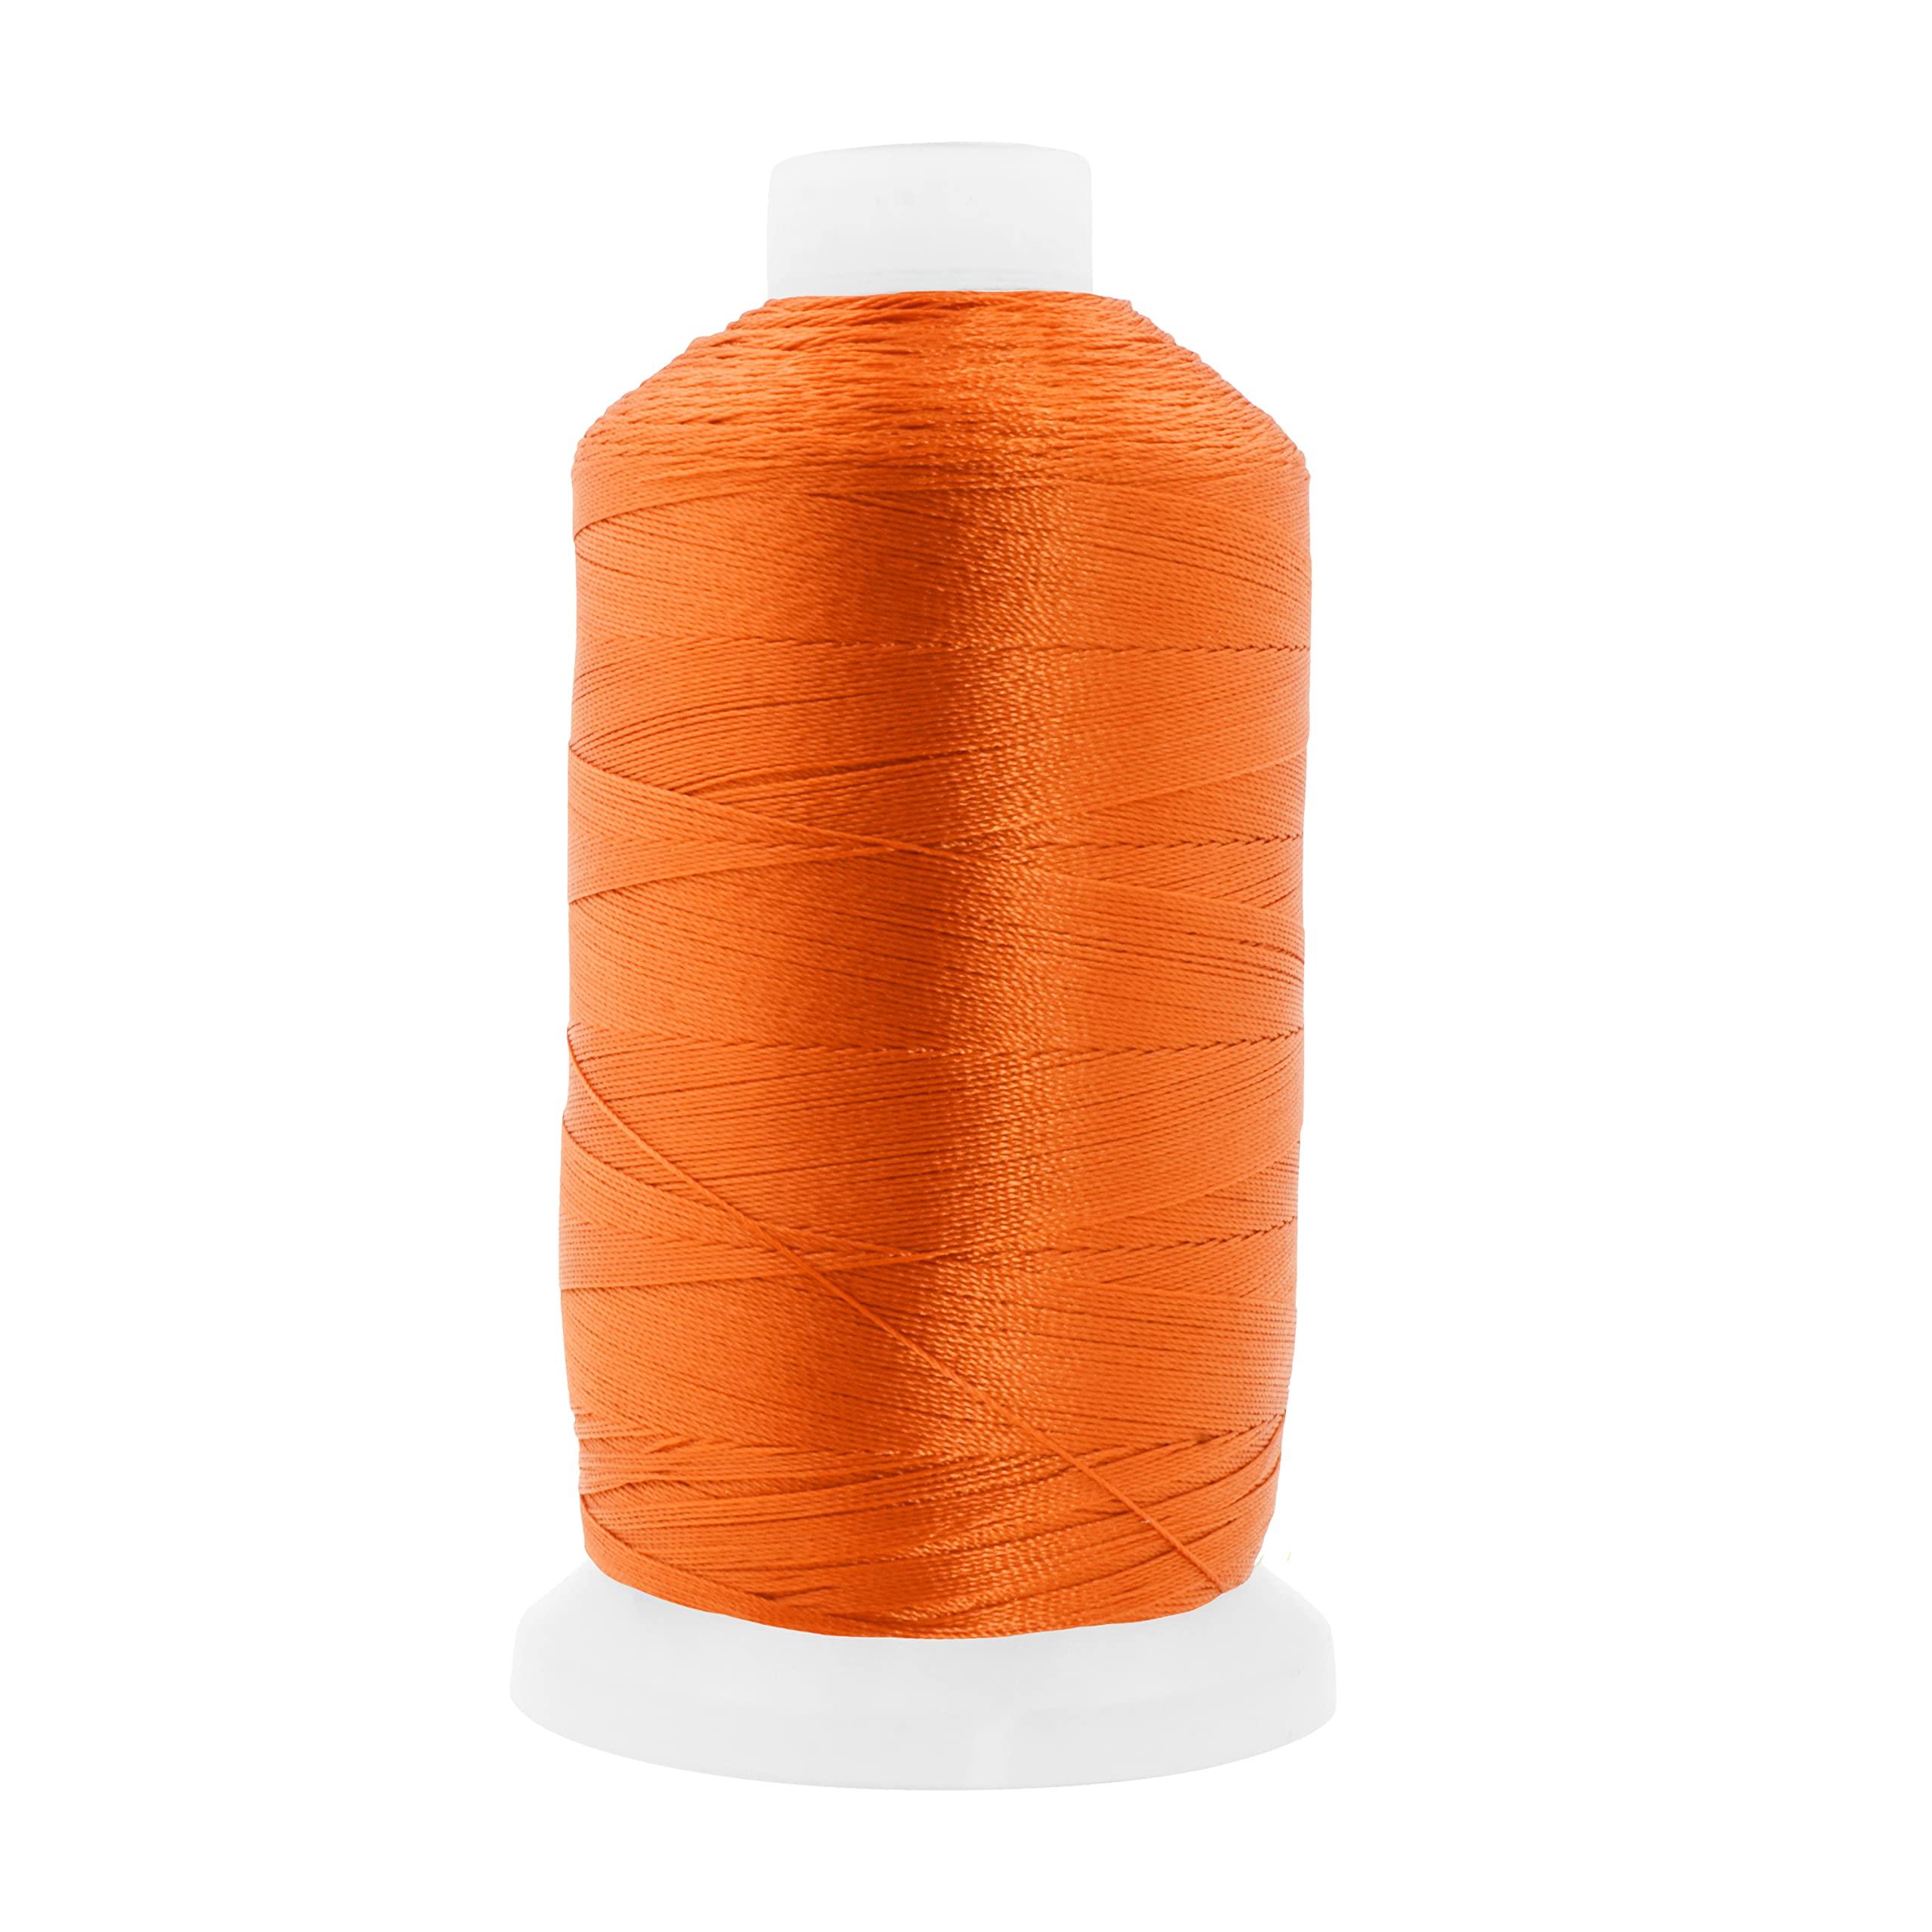 Mandala Crafts Orange Heavy Duty Thread